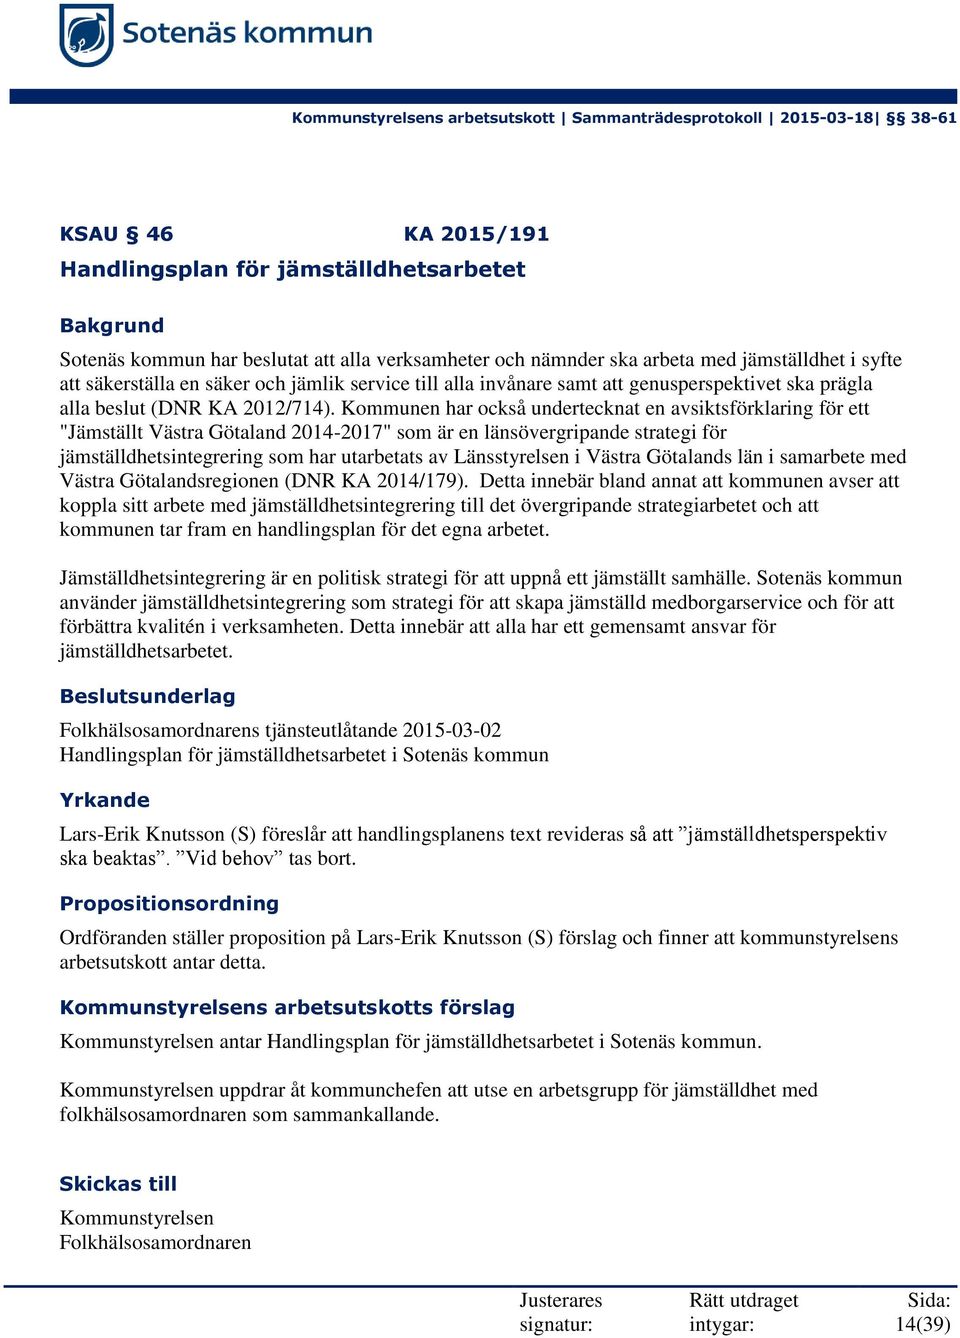 Kommunen har också undertecknat en avsiktsförklaring för ett "Jämställt Västra Götaland 2014-2017" som är en länsövergripande strategi för jämställdhetsintegrering som har utarbetats av Länsstyrelsen